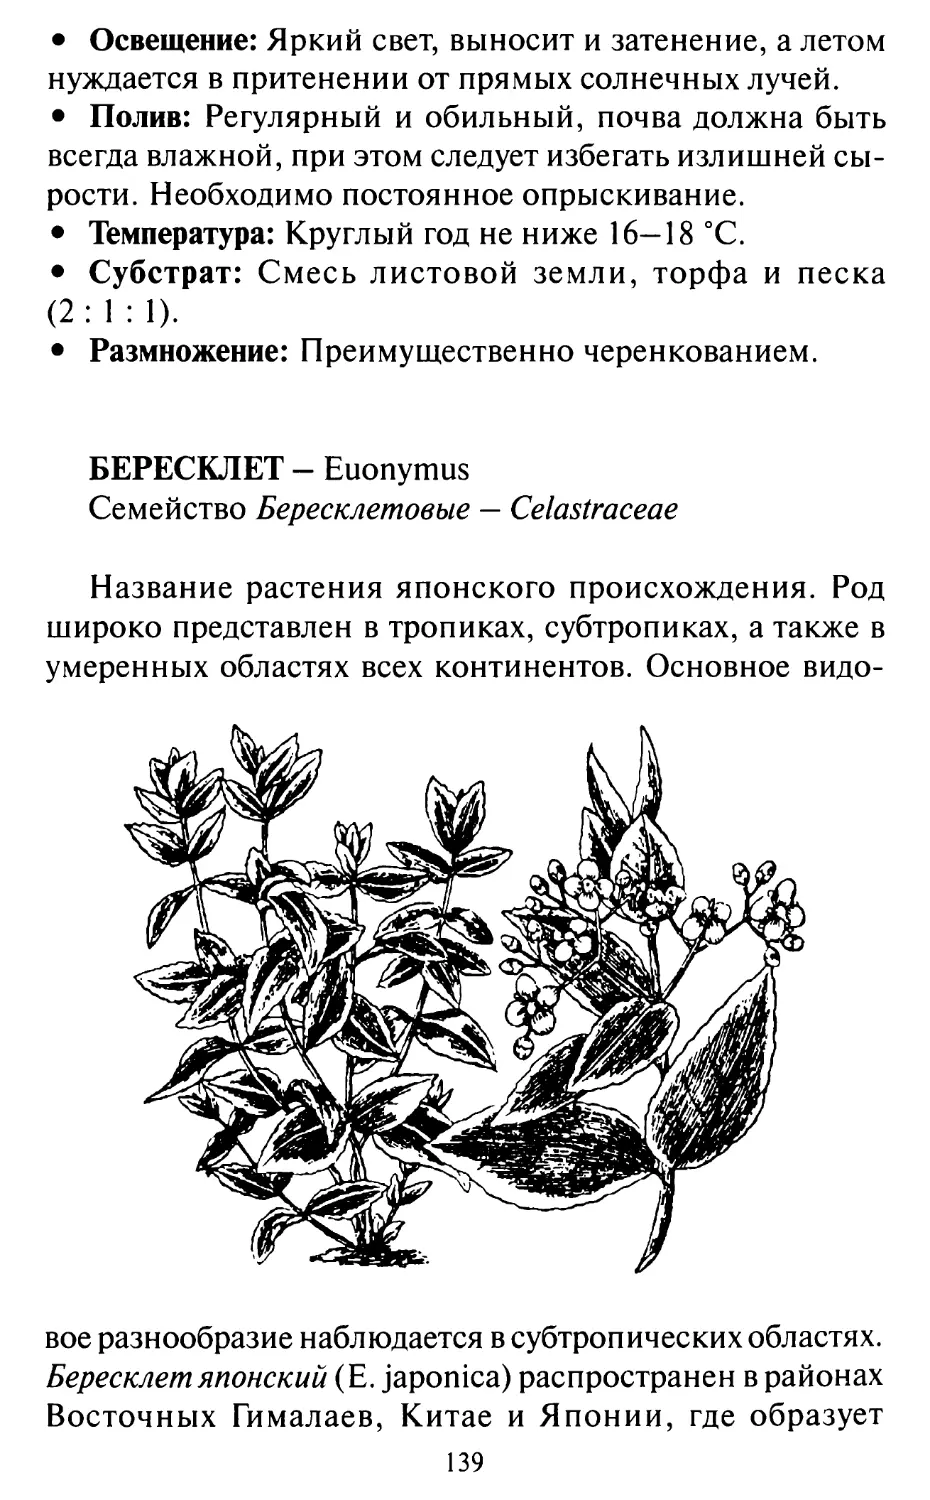 Бересклет — Euonymus